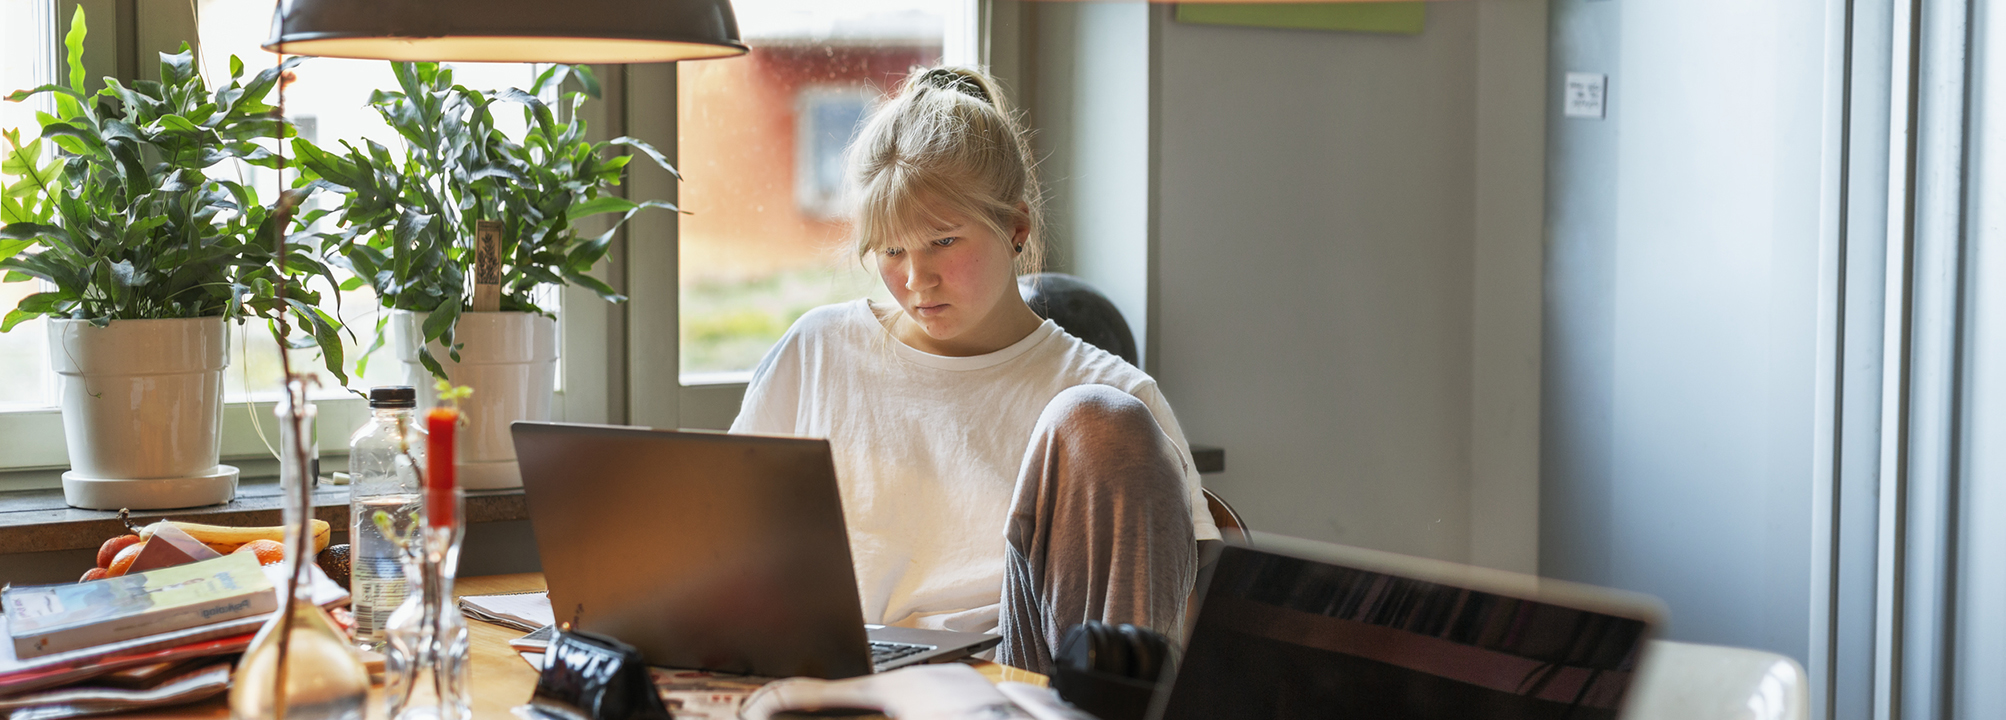 En tjej sitter framför en laptop vid köksbordet